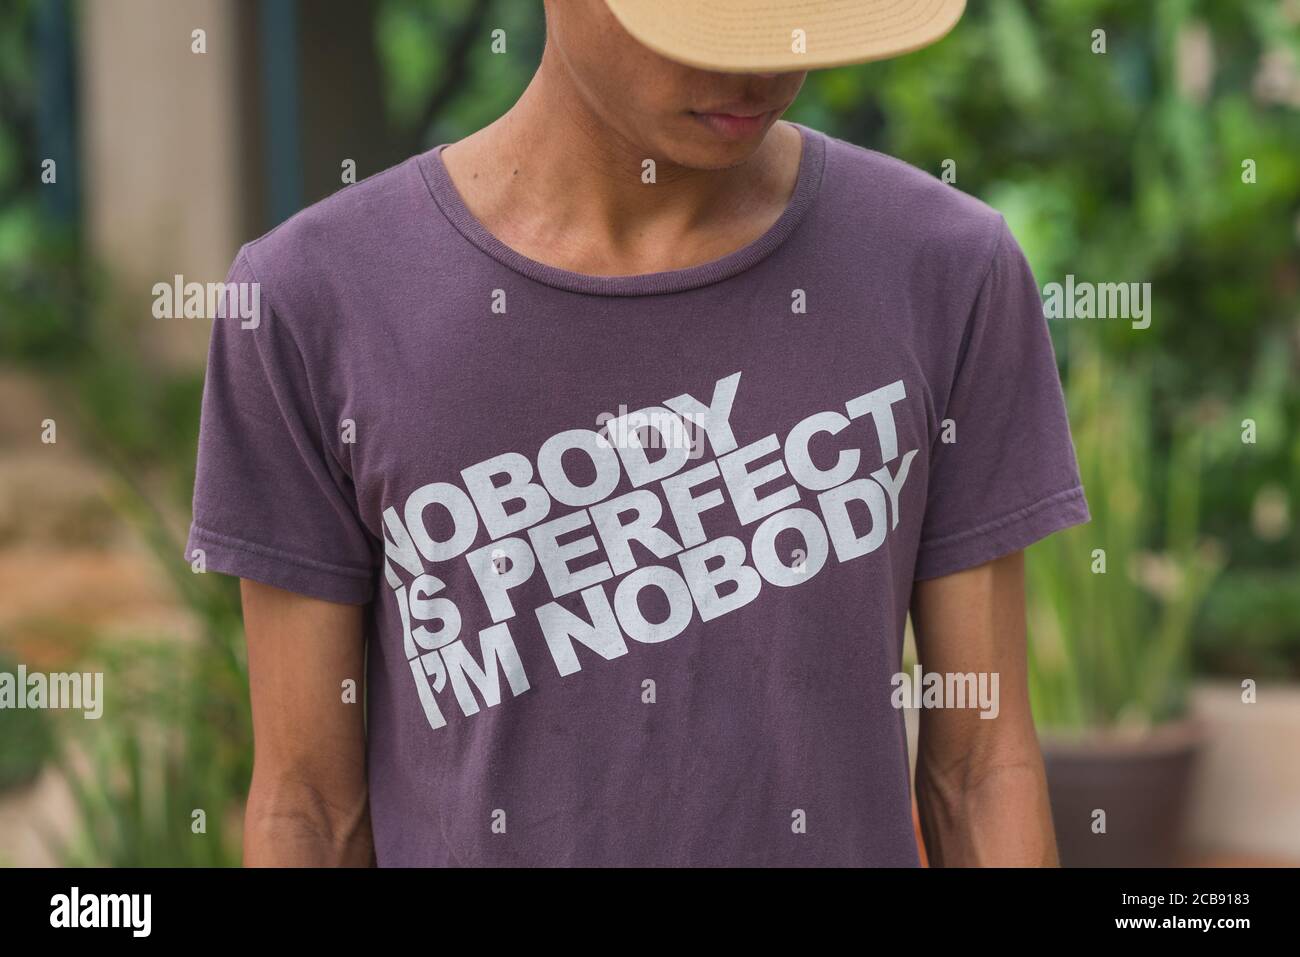 Junger Mann in einem T-Shirt mit der Aufschrift: "Nobody is perfect, I'm Nobody". Stock-Bild. Stockfoto